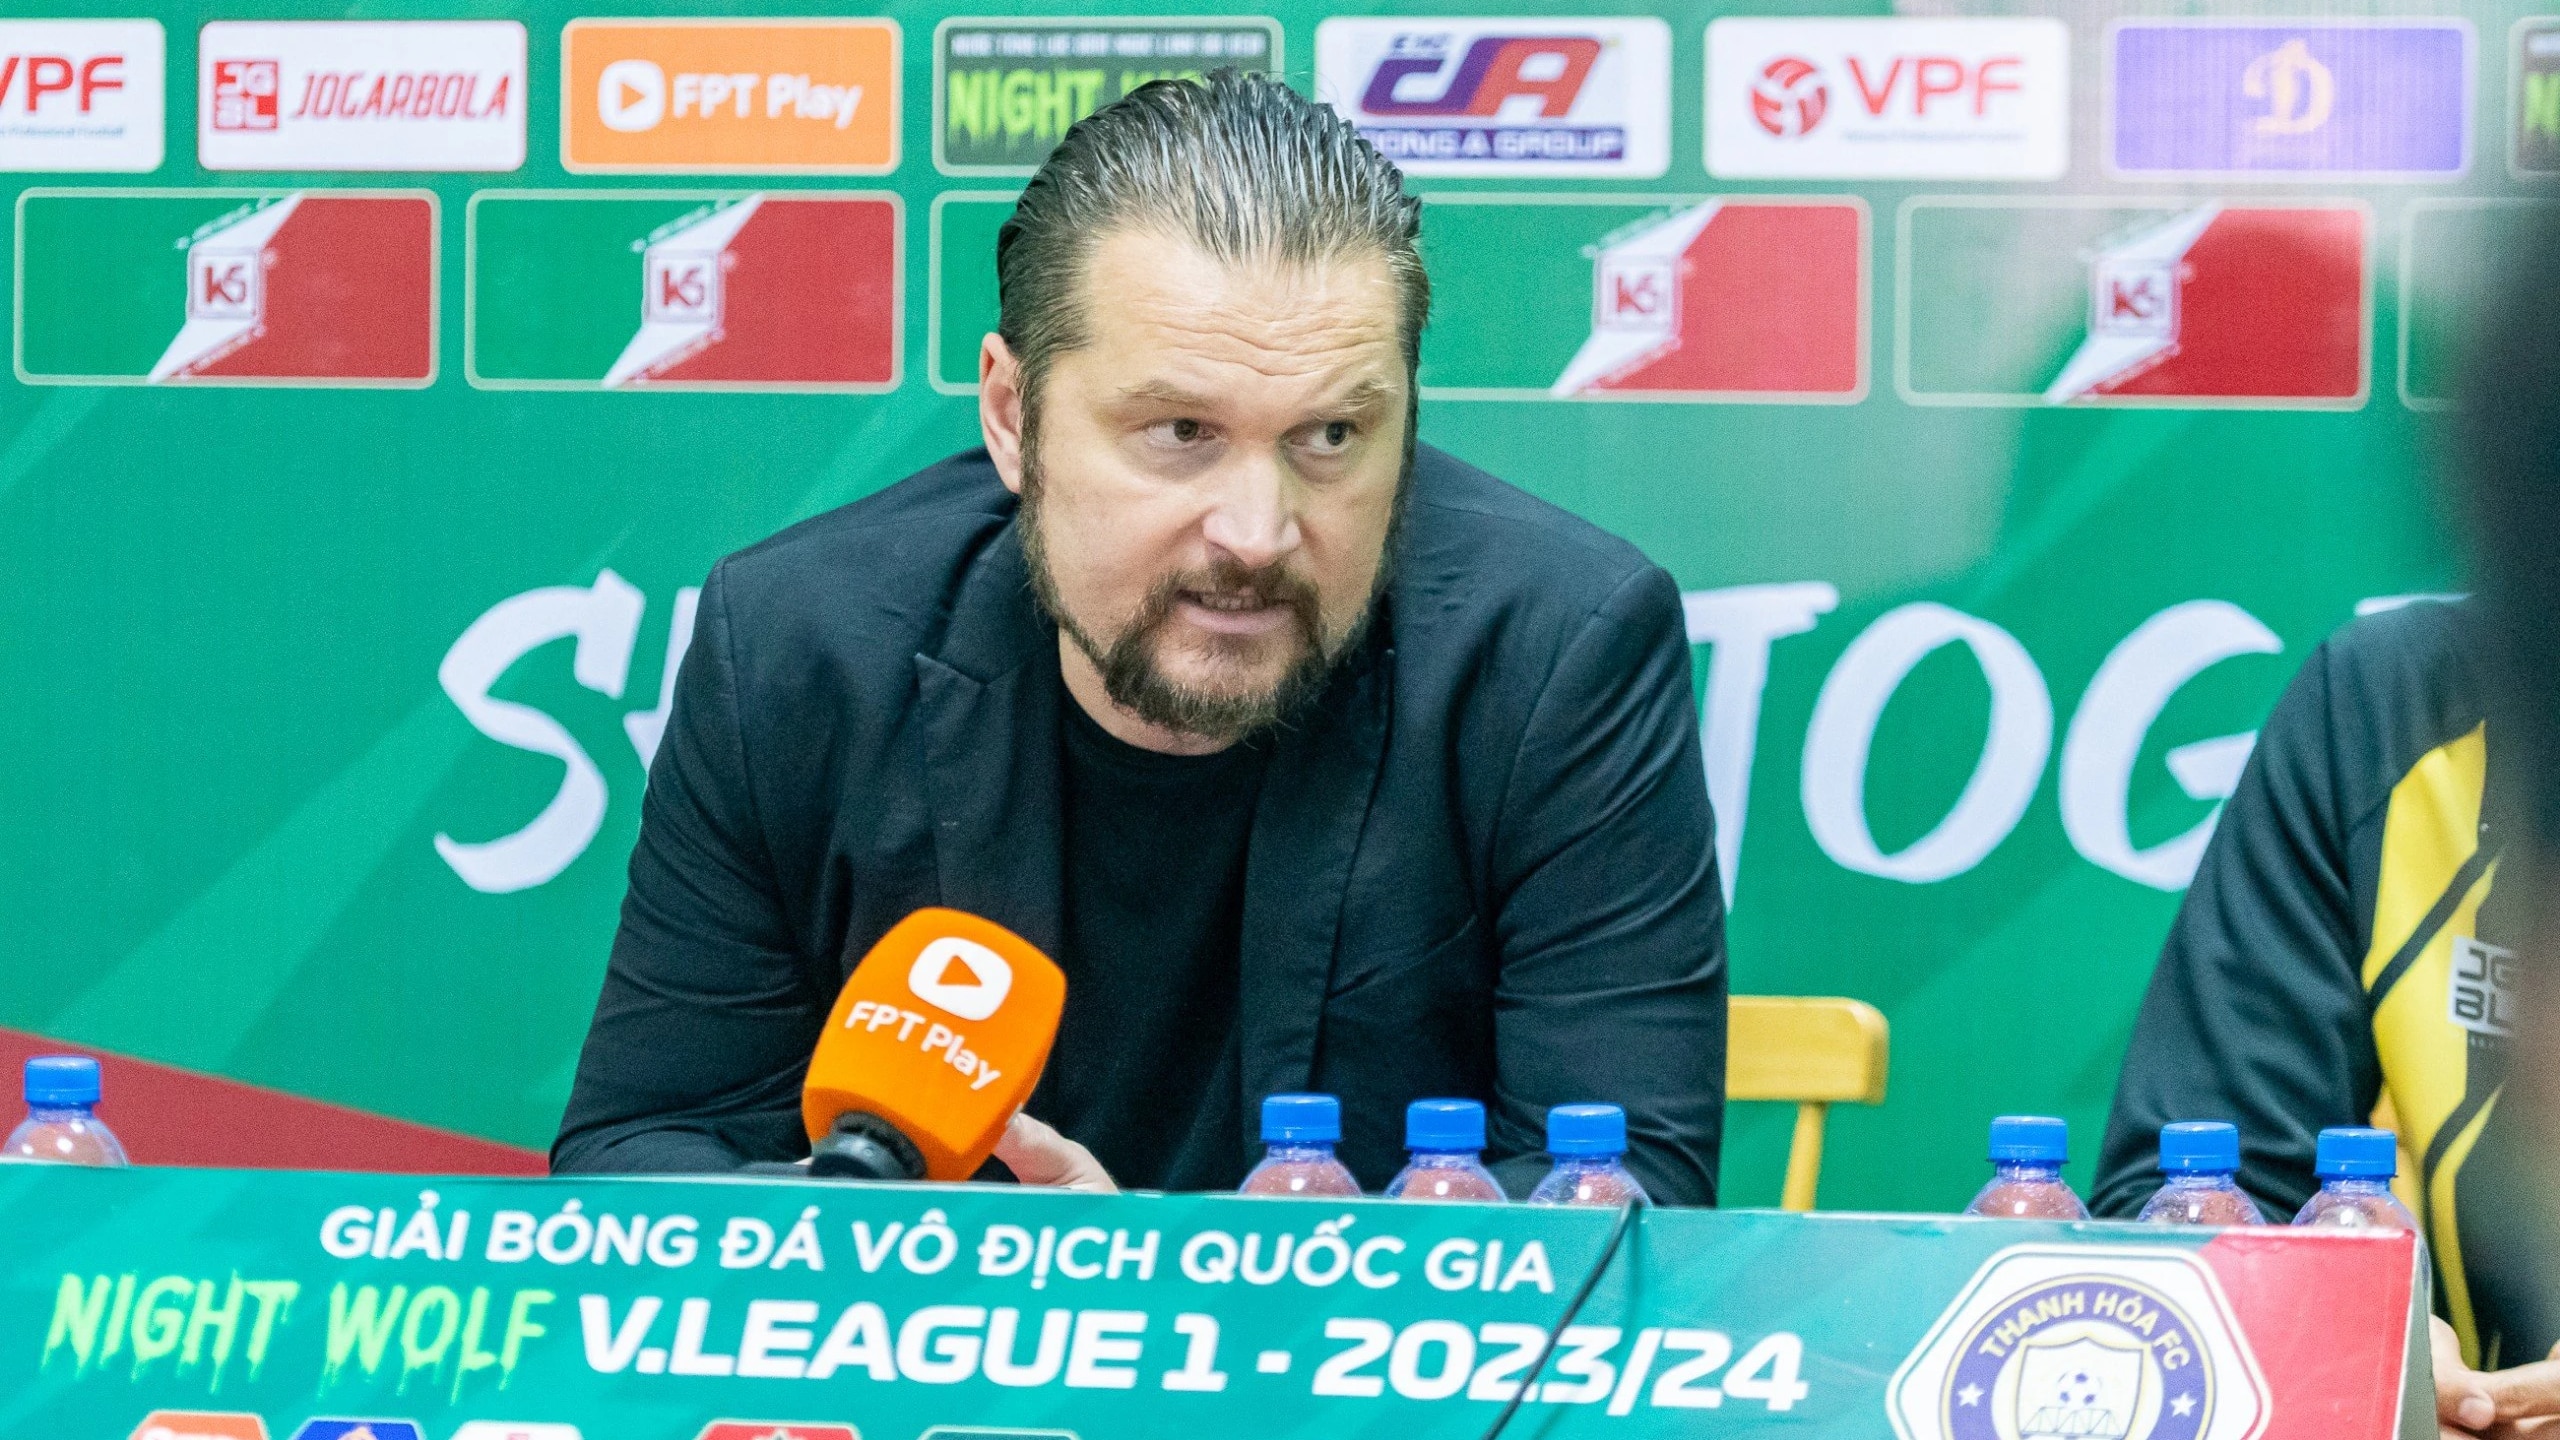 HLV Popov hiến kế phát triển bóng đá Việt Nam sau trận thắng Hà Nội- Ảnh 3.